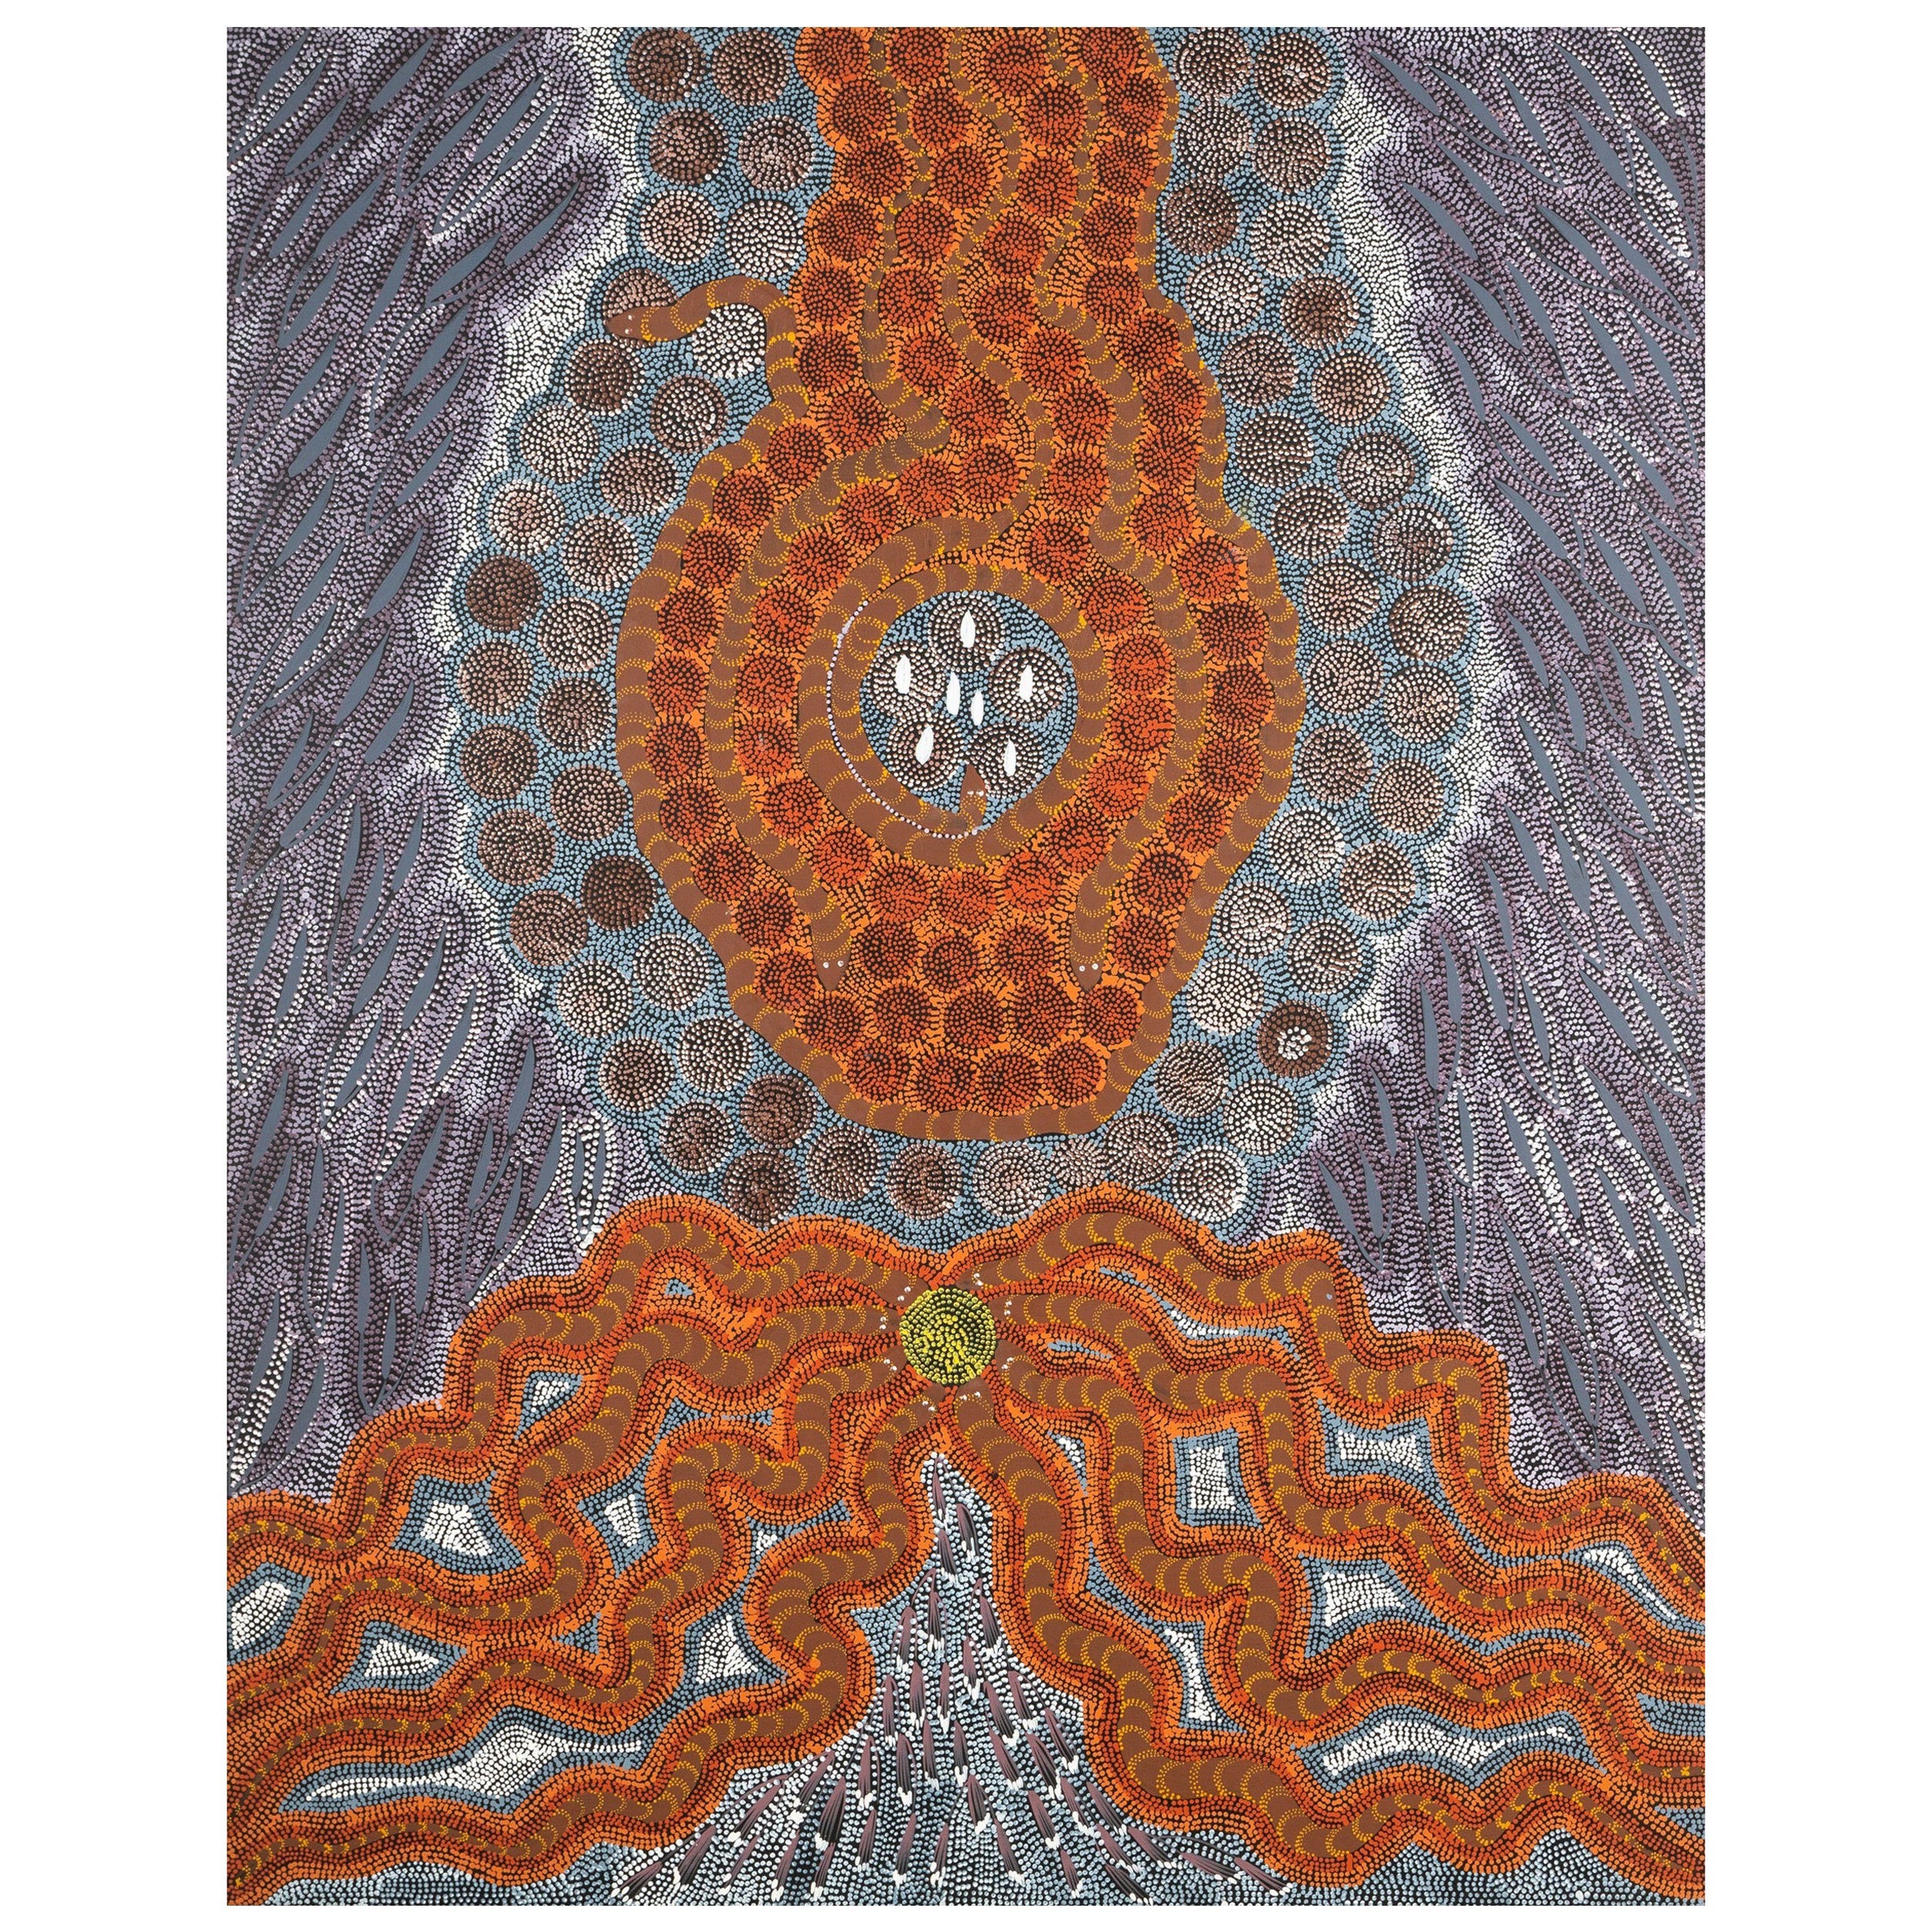 Arte aborigena australiana Janet Forrester Pittura Ngala Serpente e sogno della Via Lattea